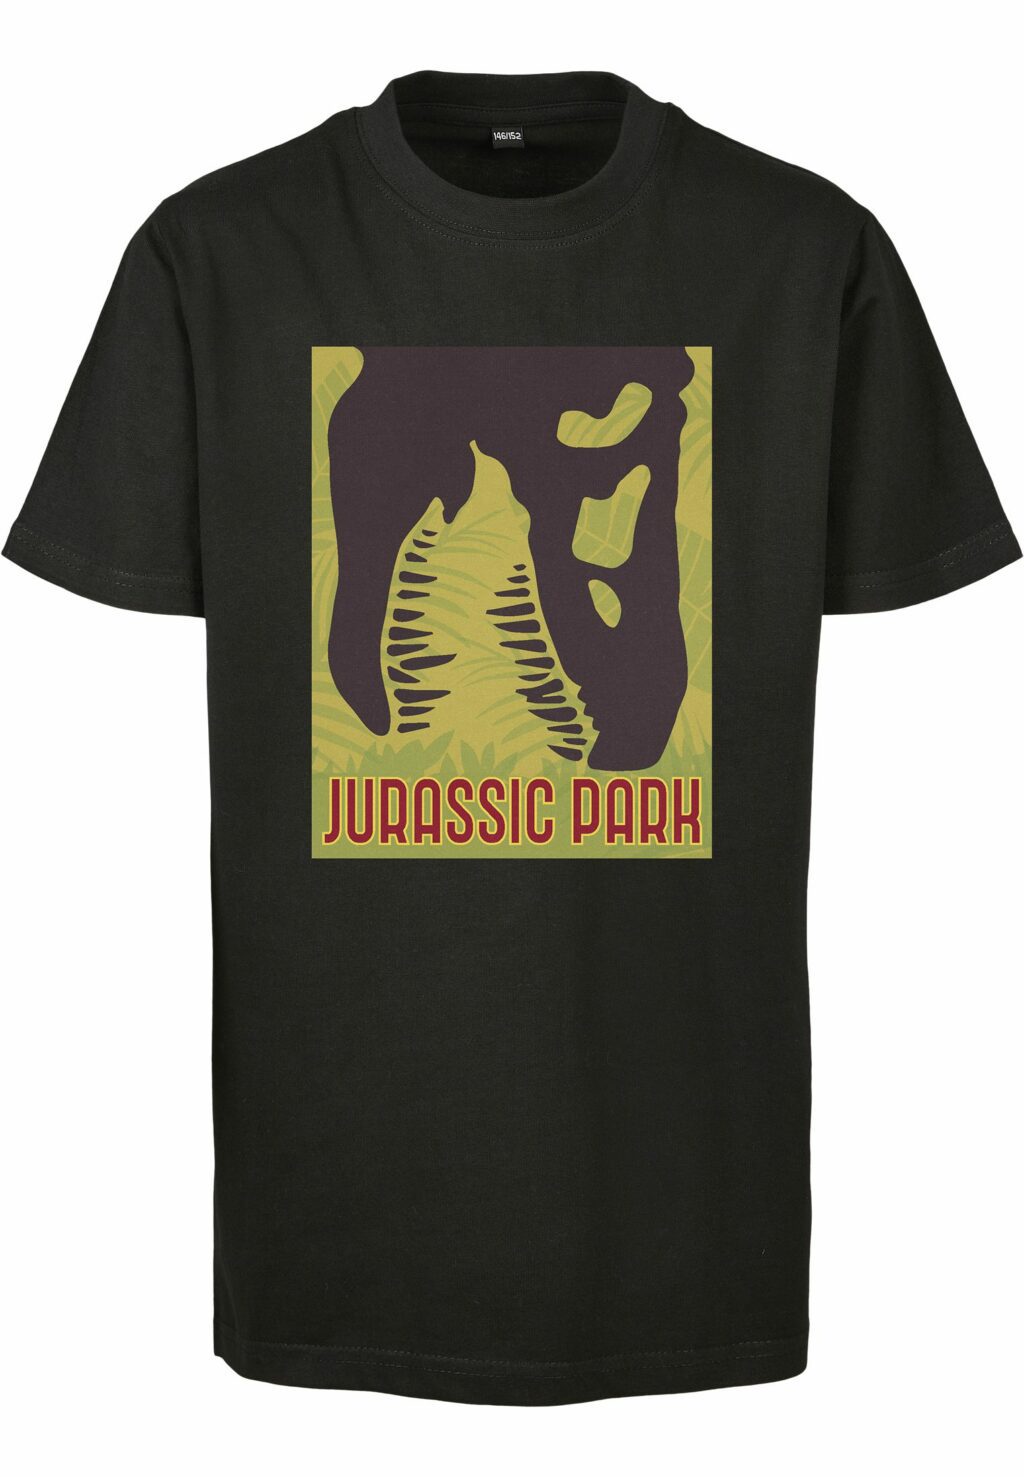 Kids Jurassic Park Big Logo Tee black MTK120